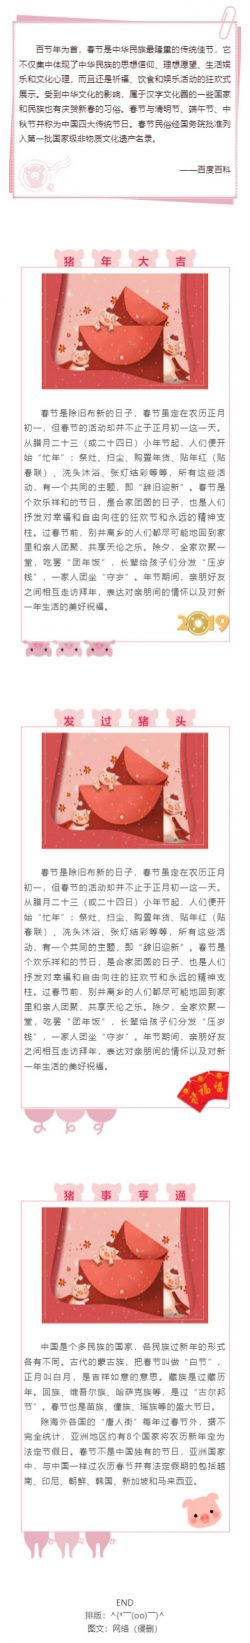 春节是中华民族最隆重的传统佳节推送图文消息模板